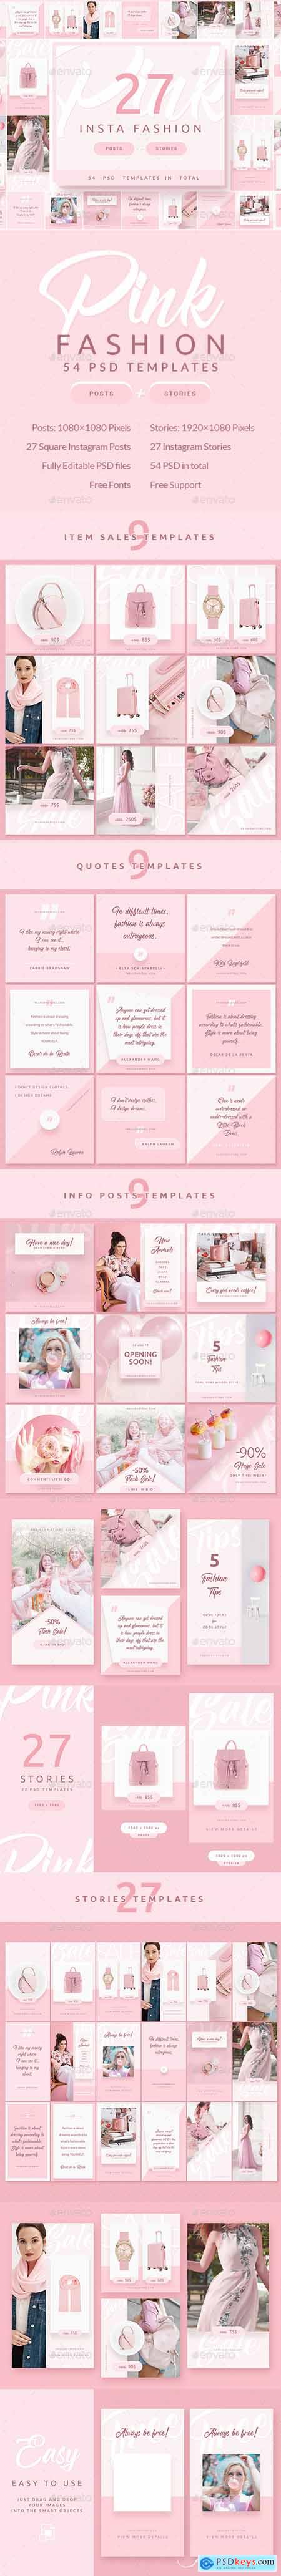 Pink Fashion - Instagram Posts & Stories 24799049